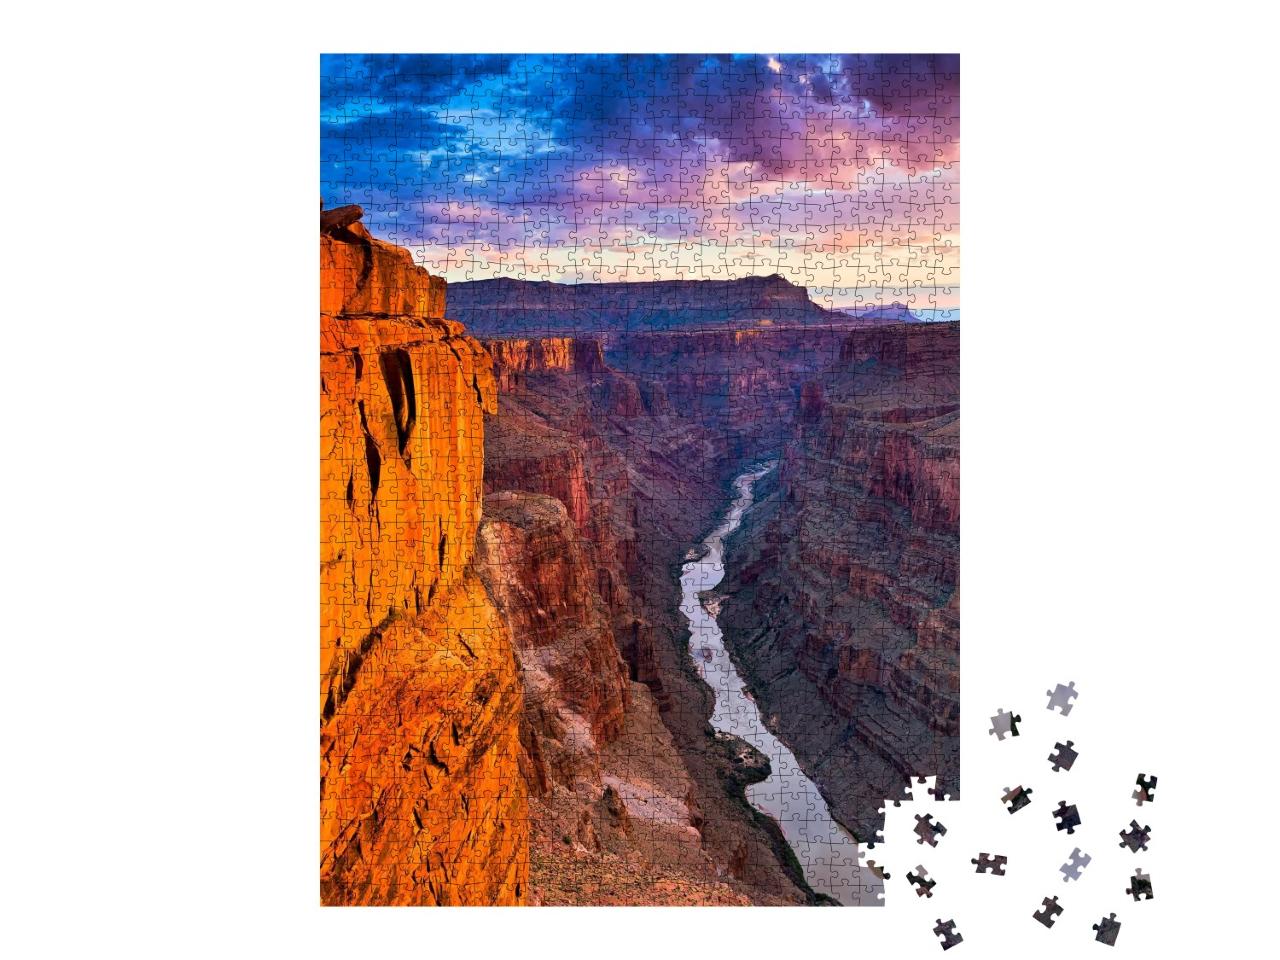 Puzzle de 1000 pièces « Point de vue de Toroweap dans le parc national du Grand Canyon »